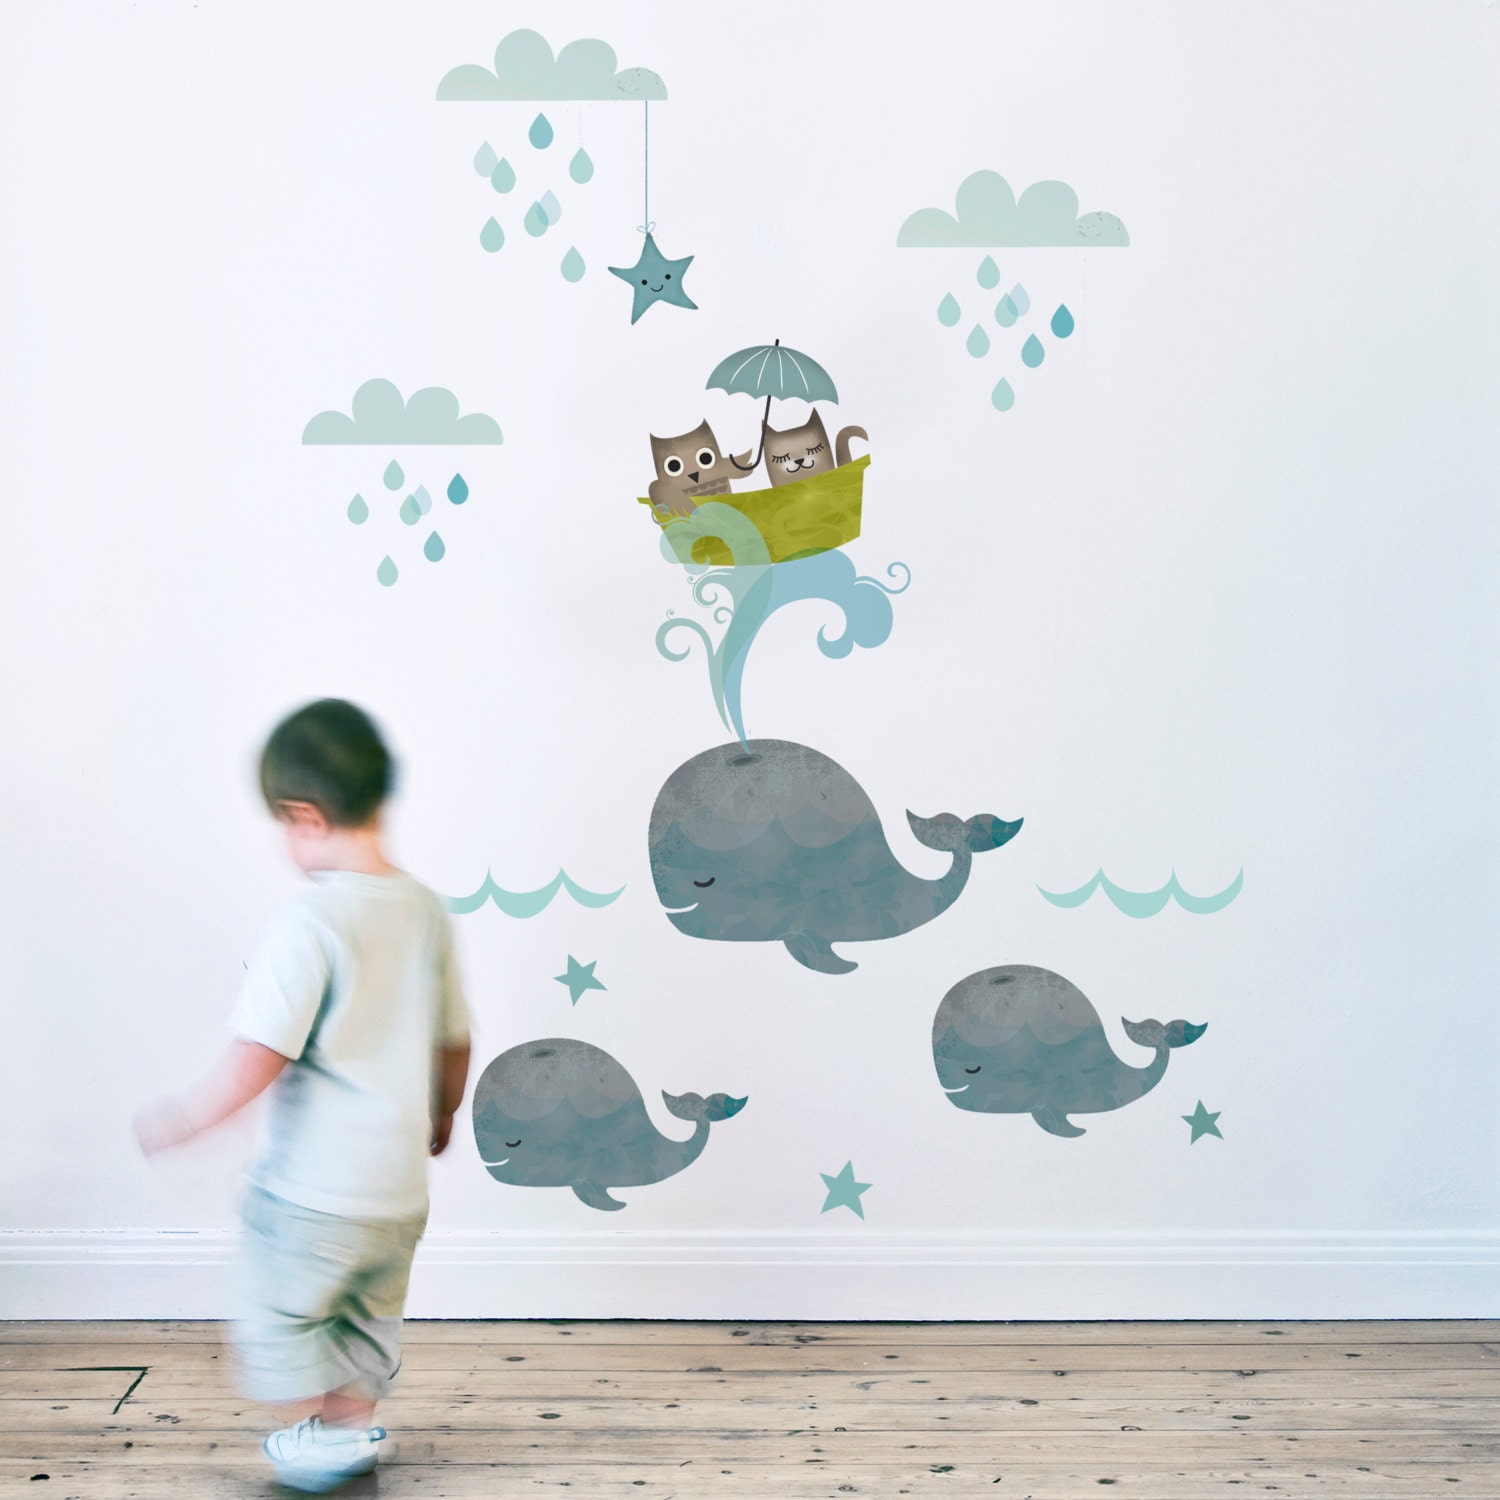 Как расписать стены в детской: примеры узоров и рисунков